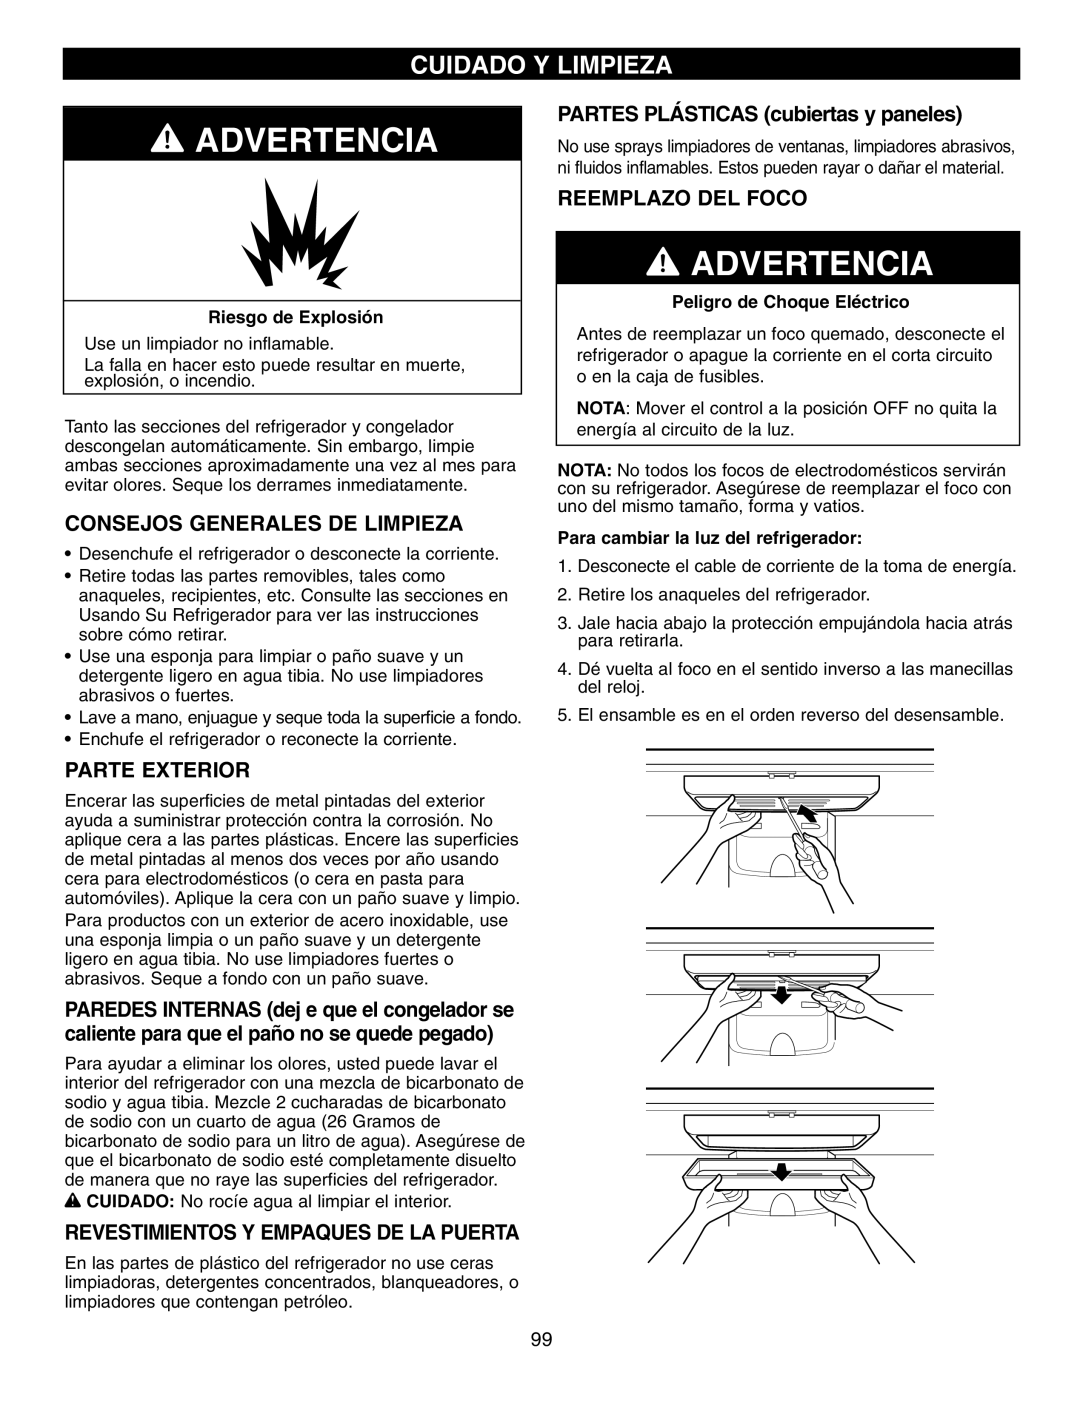 LG Electronics LFX25960 manual Cuidado Y Limpieza, Advertencia, PARTES PLÁSTICAS cubiertas y paneles, Reemplazo Del Foco 